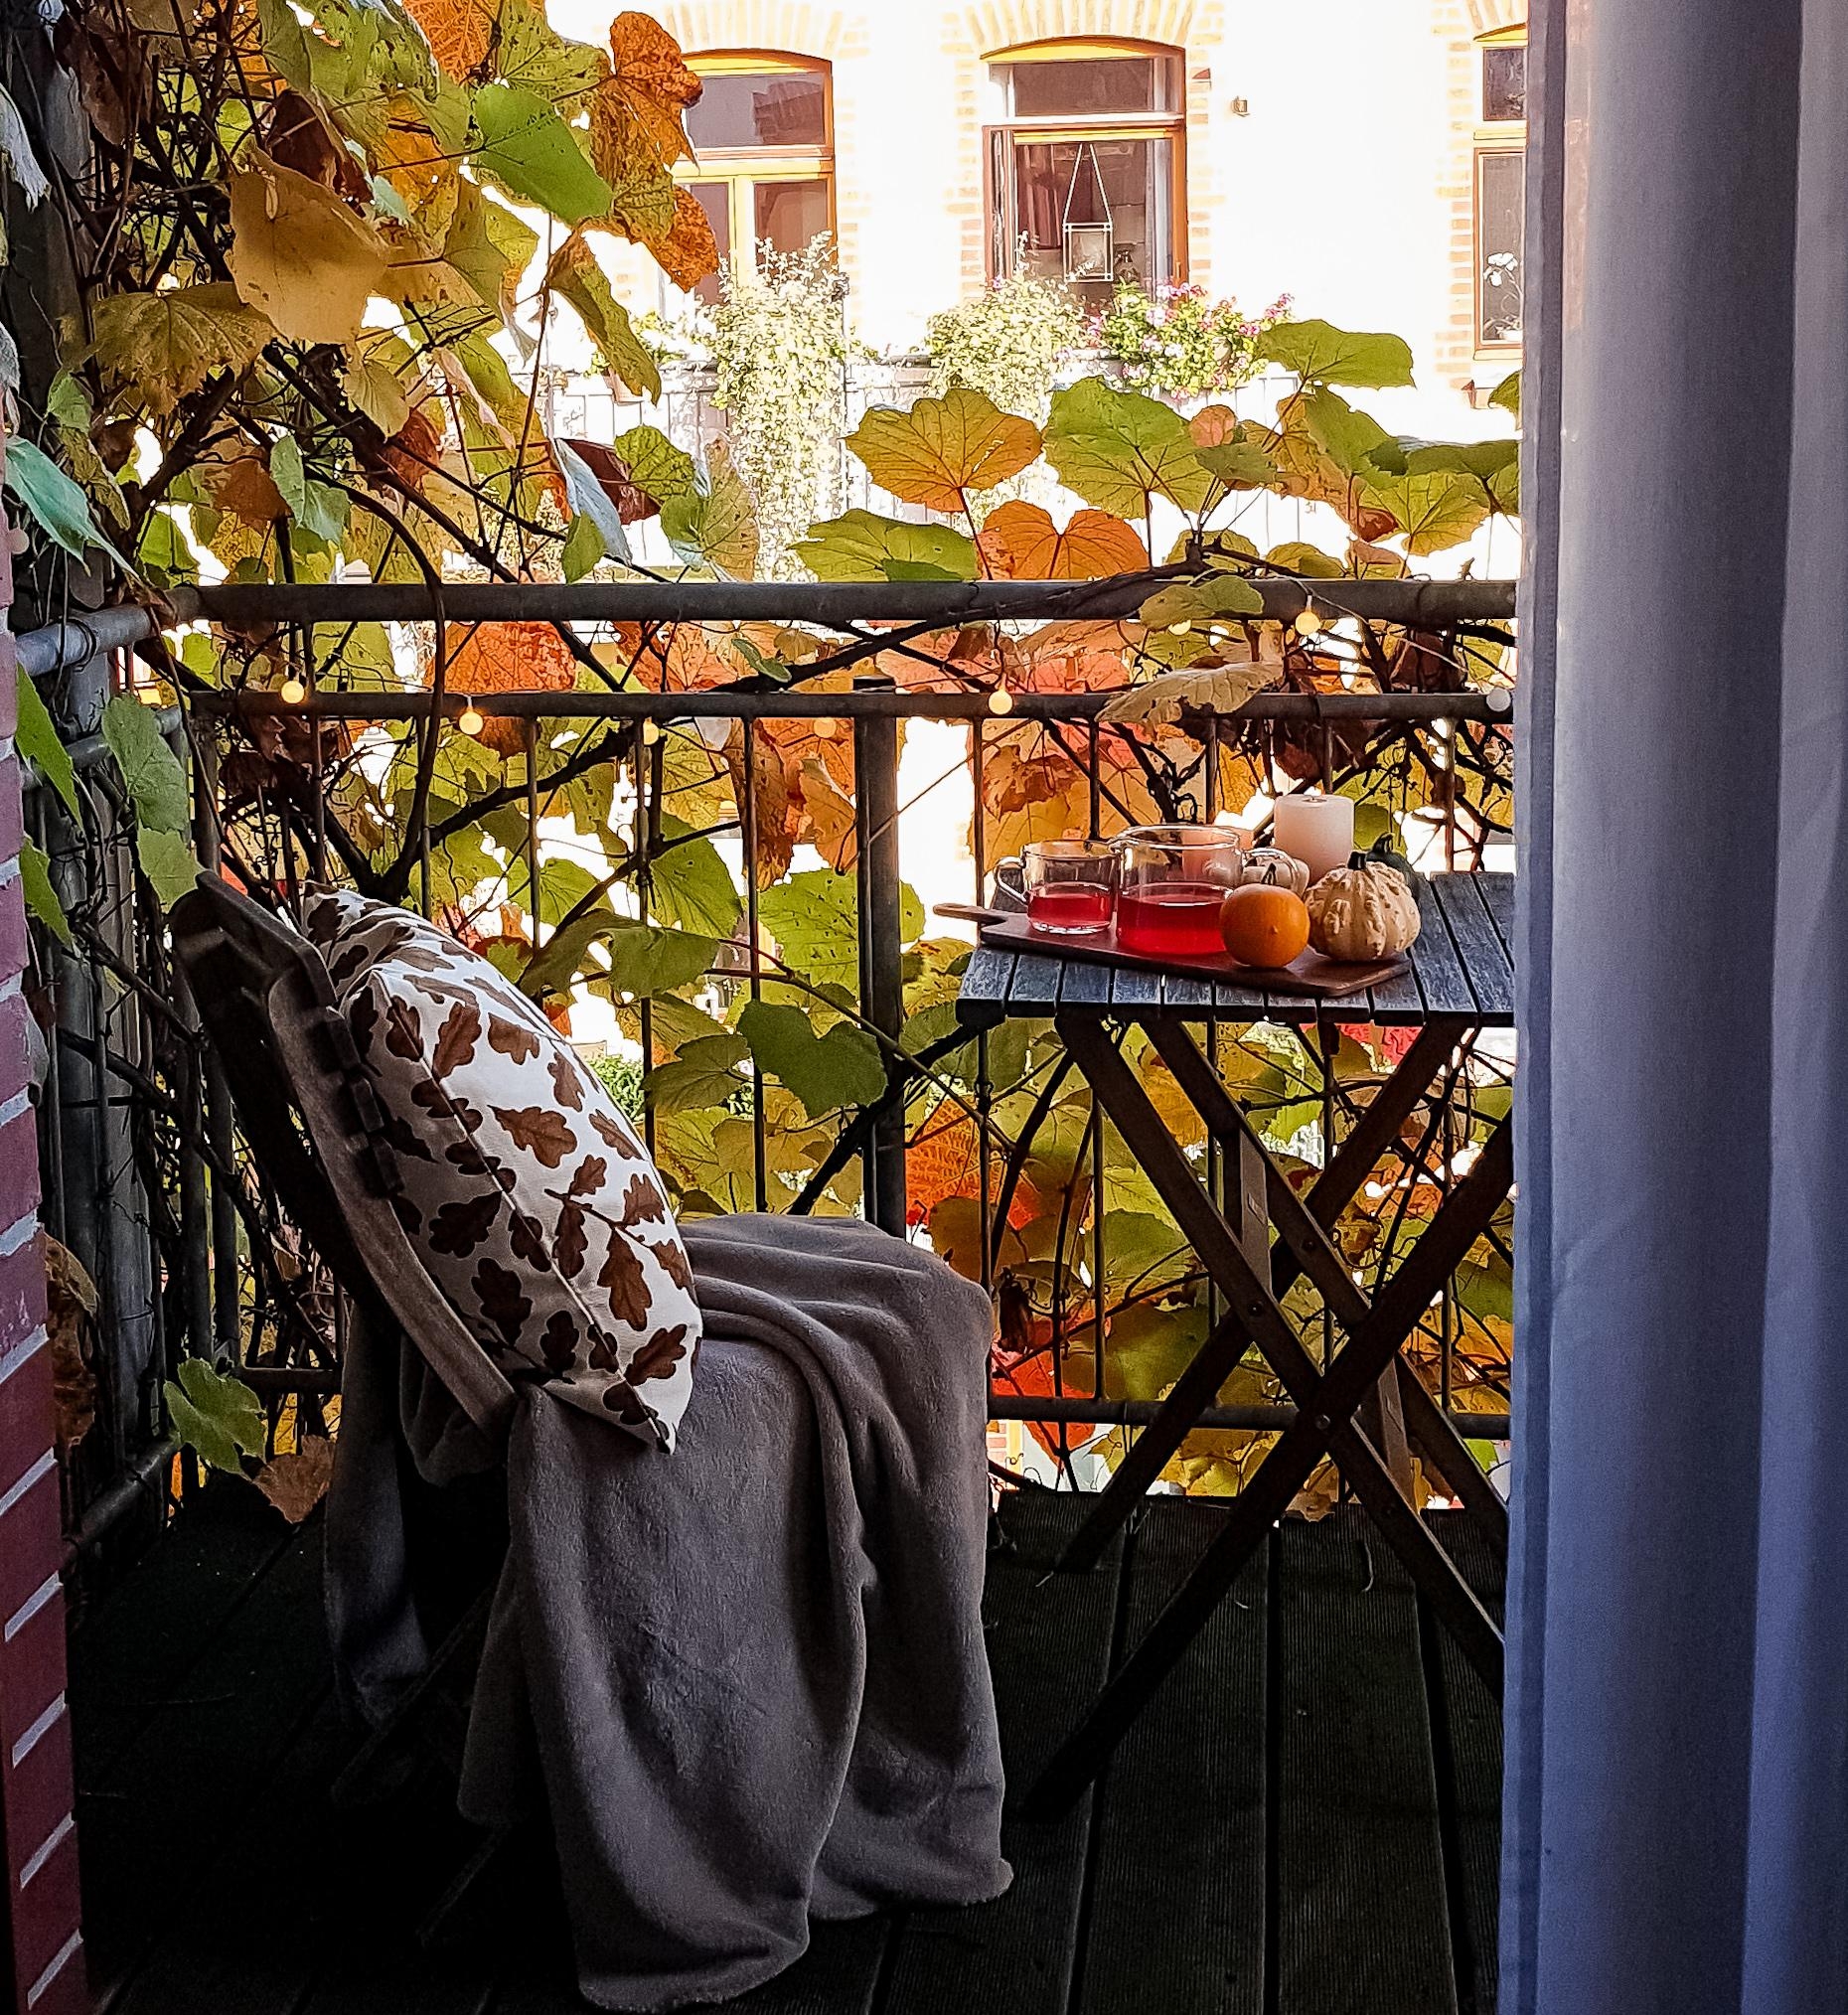 Der #balkon im #hinterhof in seinen schönsten Herbstfarben. #wein #cosy #hygge #herbst #outside